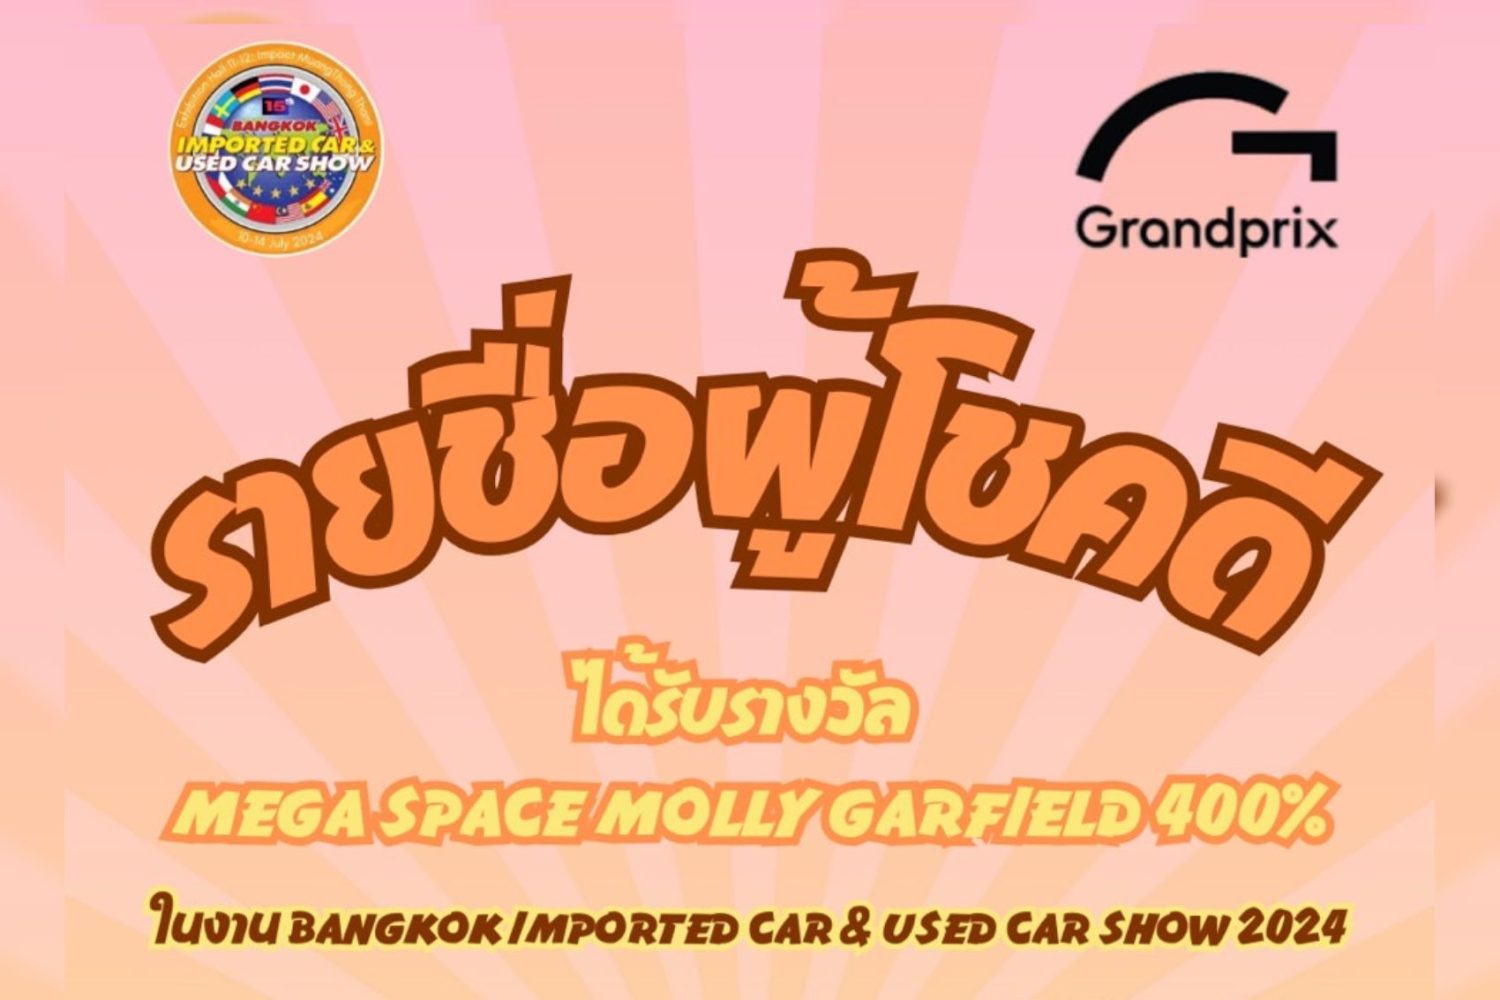 Lucky-Mega Space Molly Garfield 400